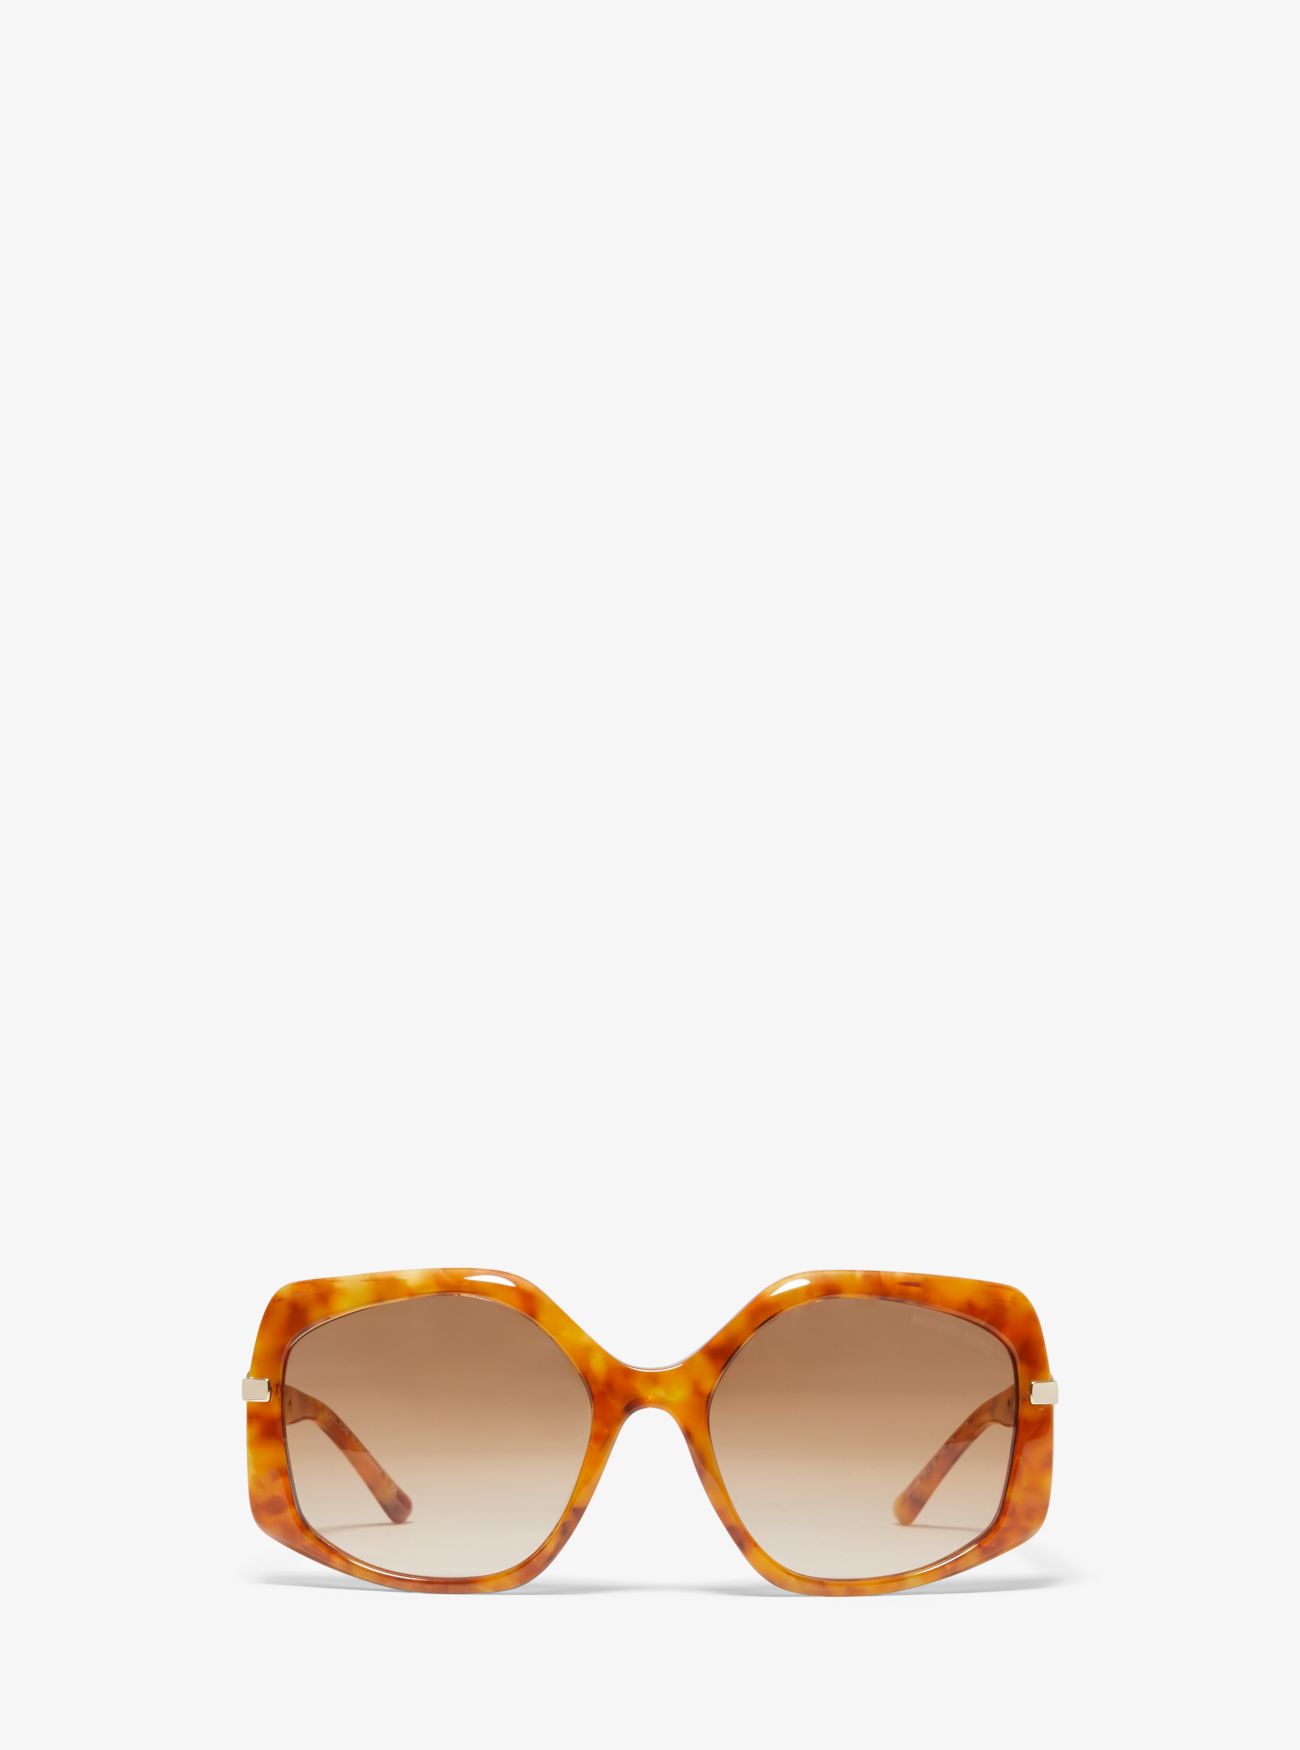 MK Cheyenne Sunglasses - Yellow - Michael Kors